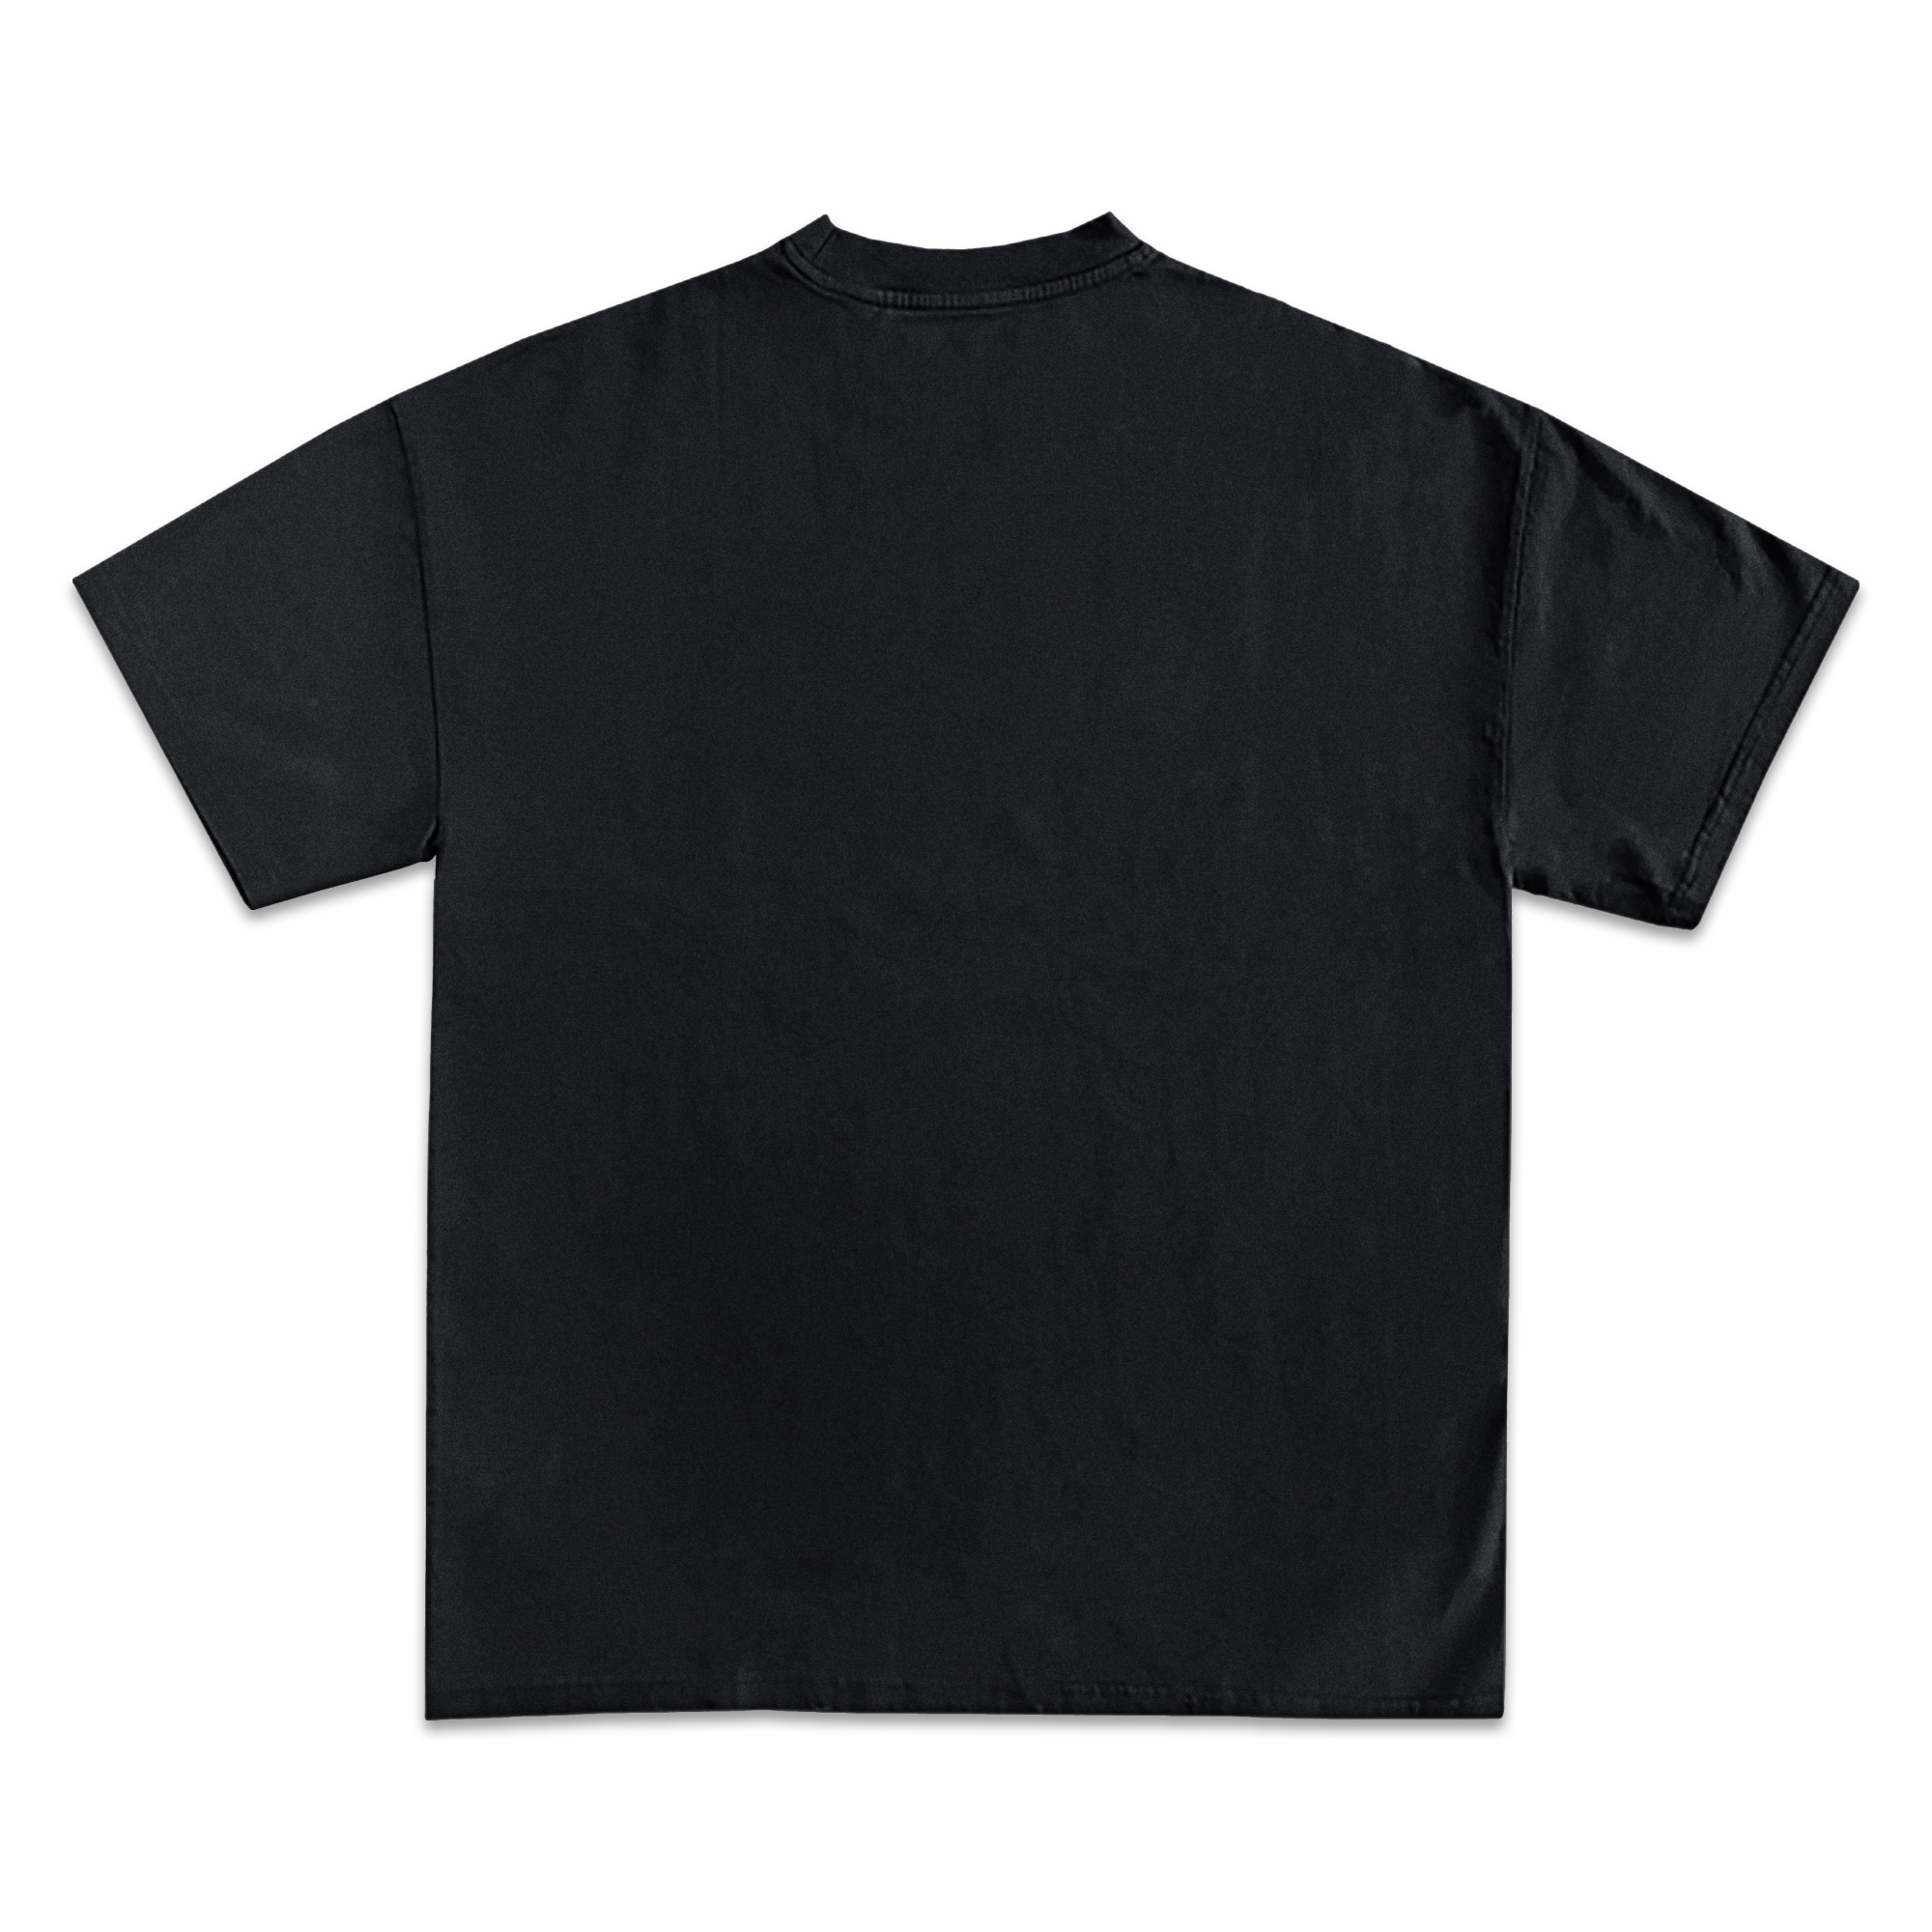 Tom Brady Jumbo Graphic T-Shirt